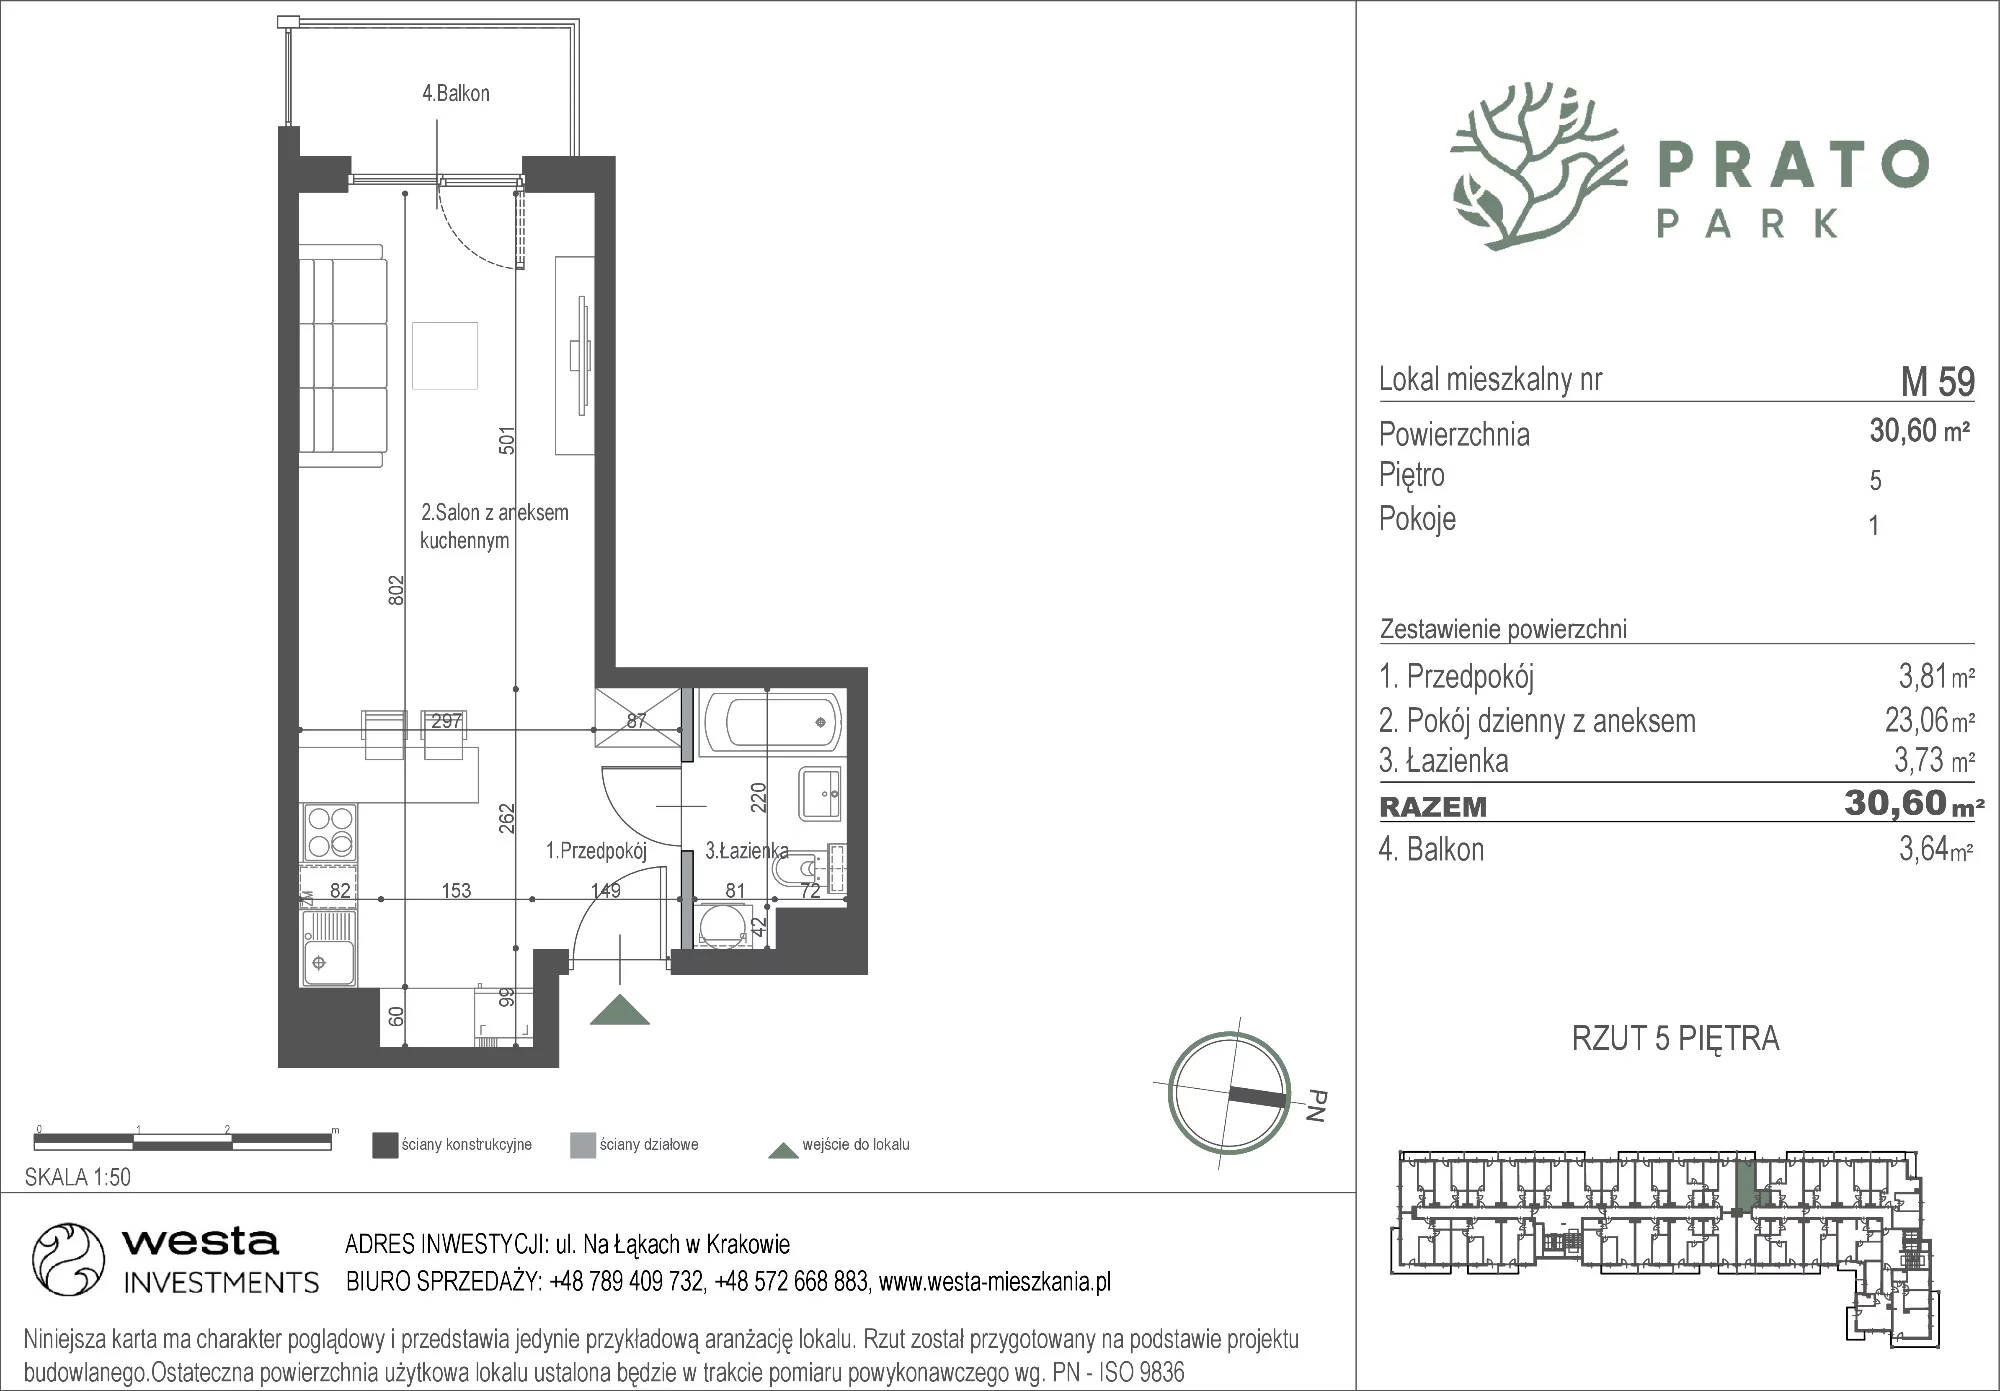 Mieszkanie 30,60 m², piętro 5, oferta nr M59, Prato Park, Kraków, Czyżyny, ul. Na Łąkach